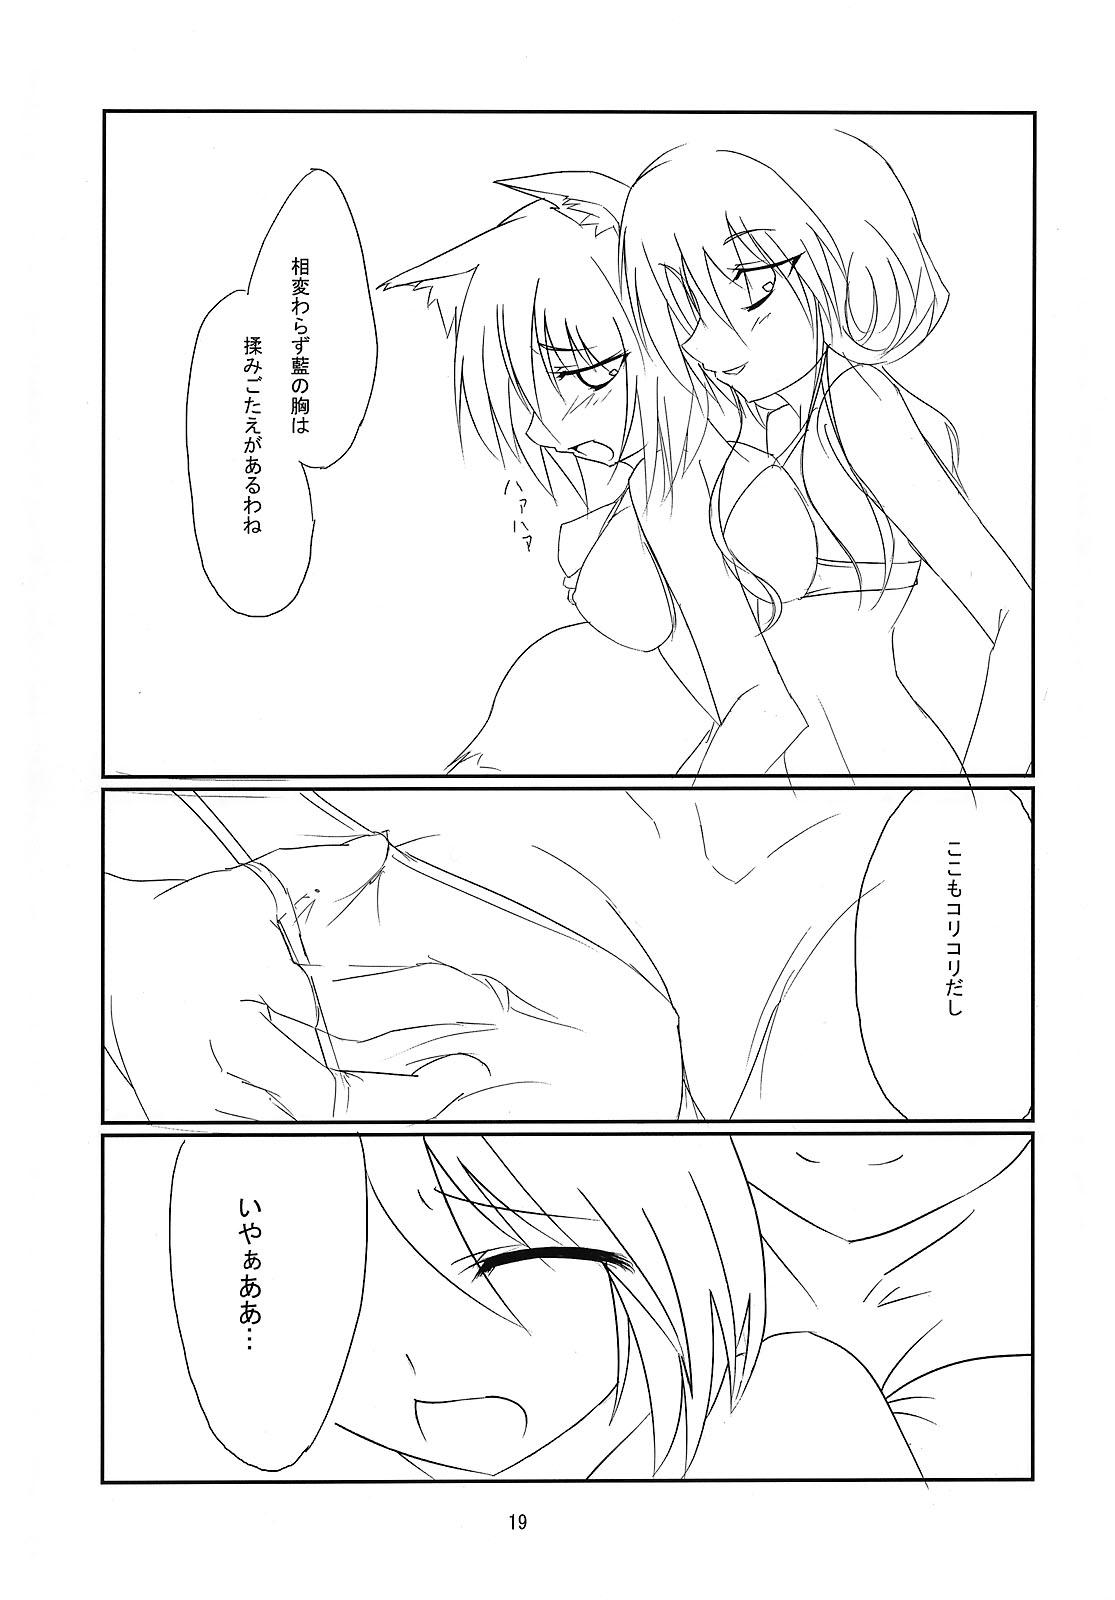 RAN × Yukari AND Alice × Marisa 17